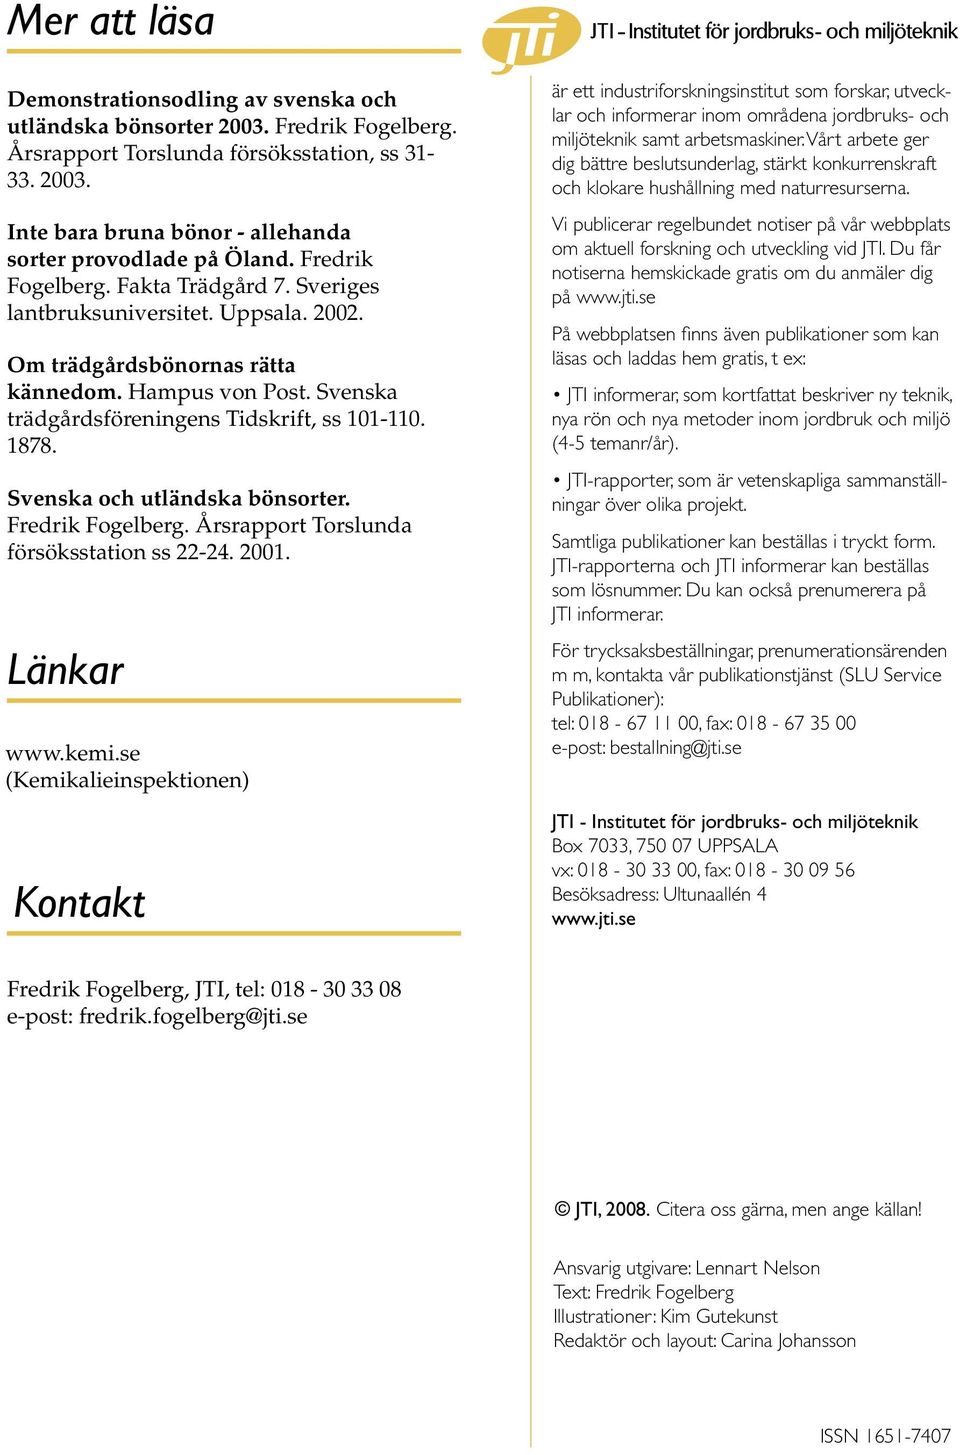 Svenska och utländska bönsorter. Fredrik Fogelberg. Årsrapport Torslunda försöksstation ss 22-24. 2001. Länkar www.kemi.